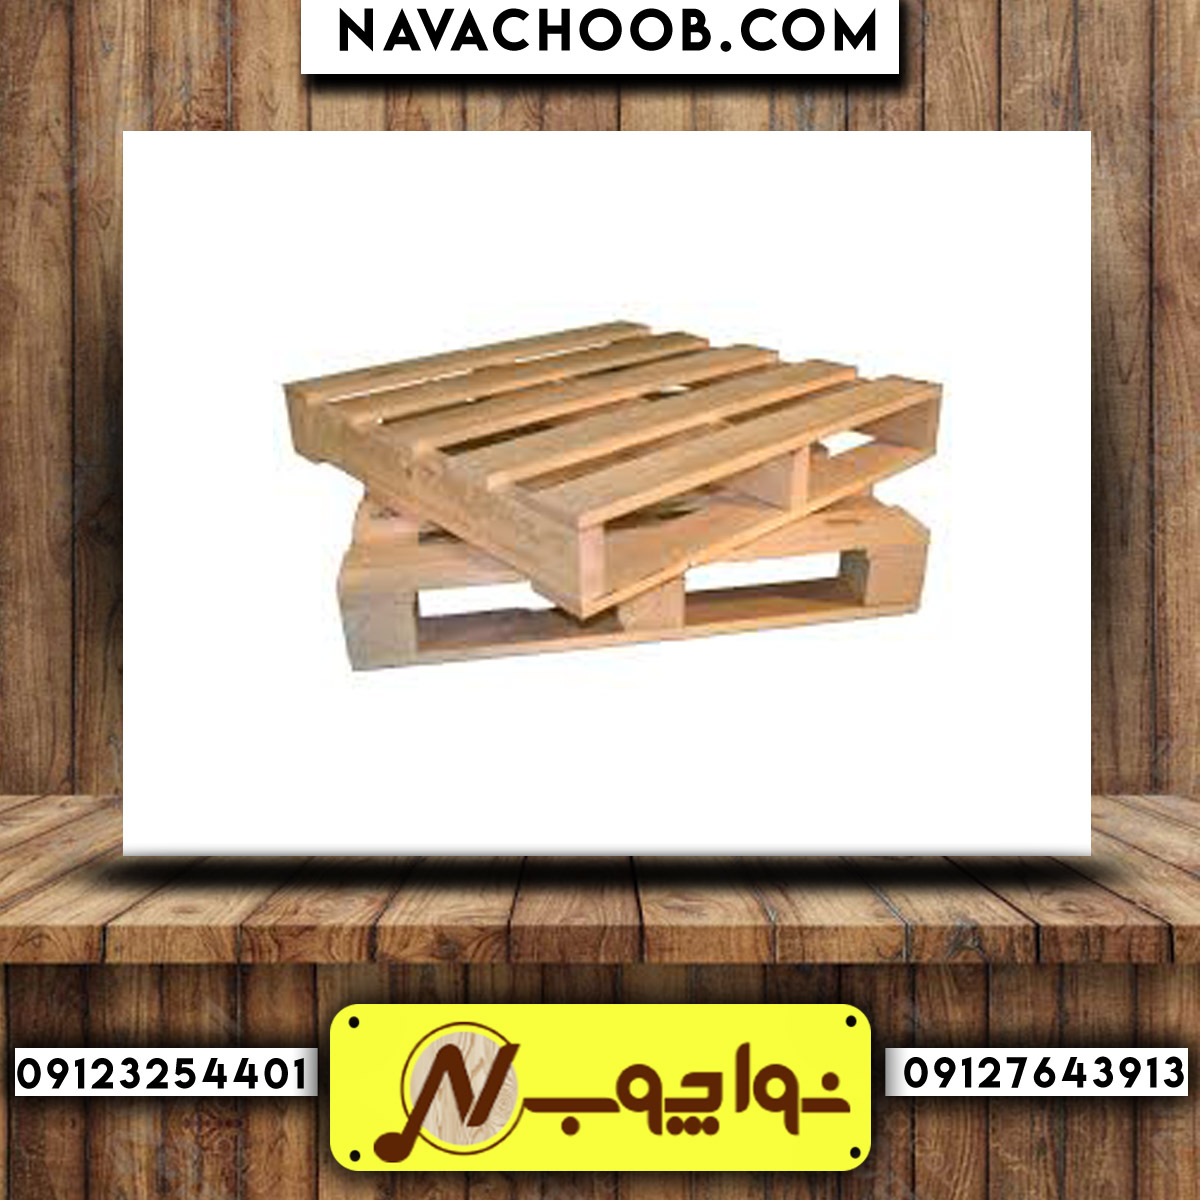 فروش پالت چوبی با بهترین قیمت در پارس آپشن 